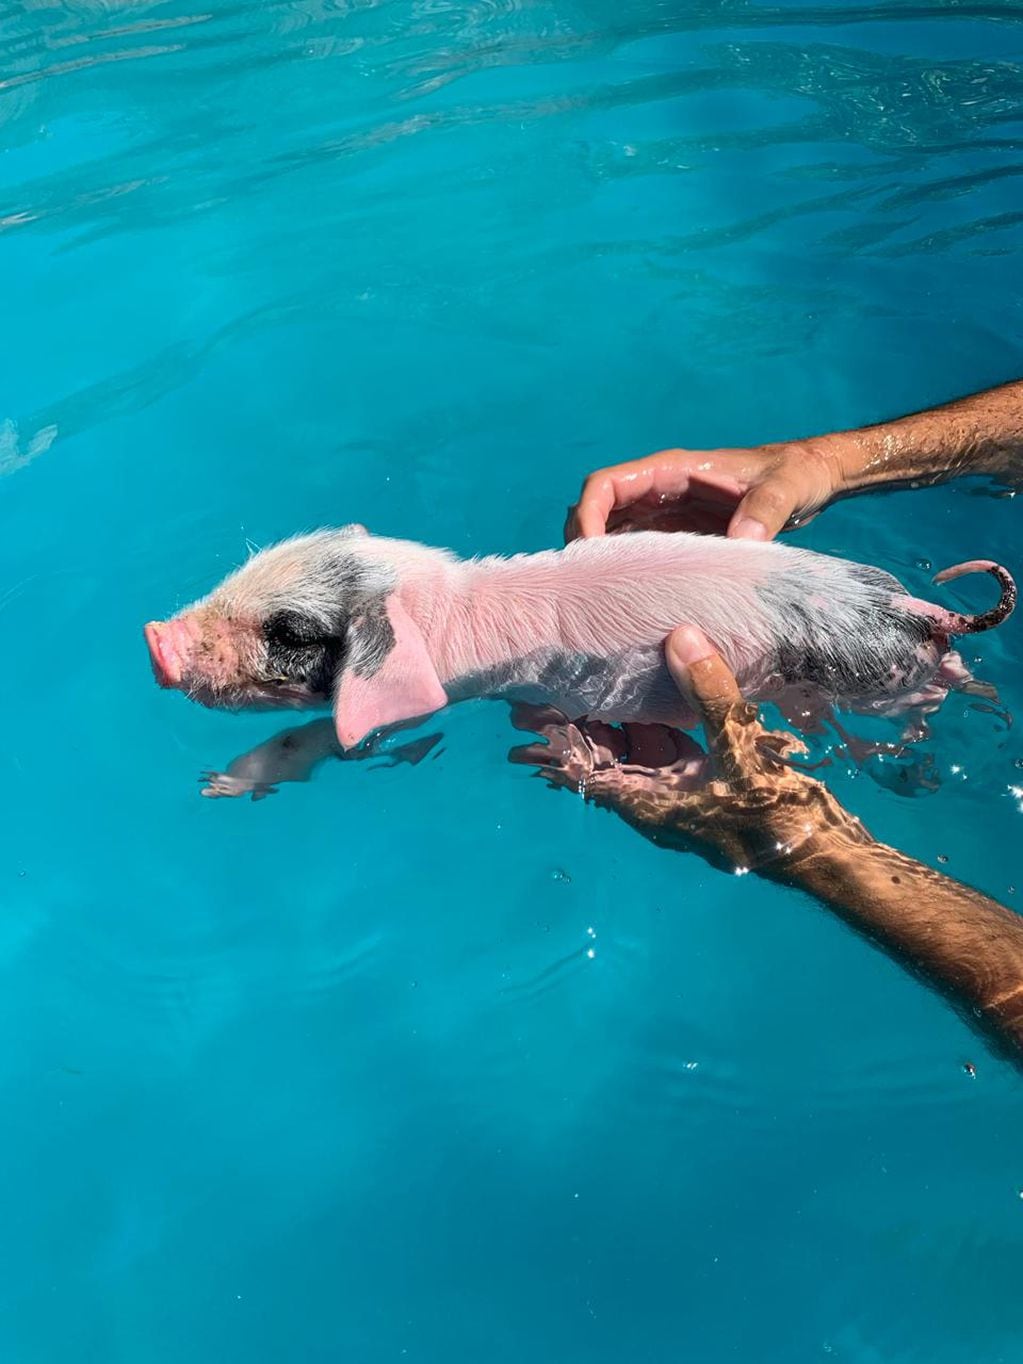 Angelita, la chancha rescatada que se salvó con acuaterapia en una piscina  (Gentileza)